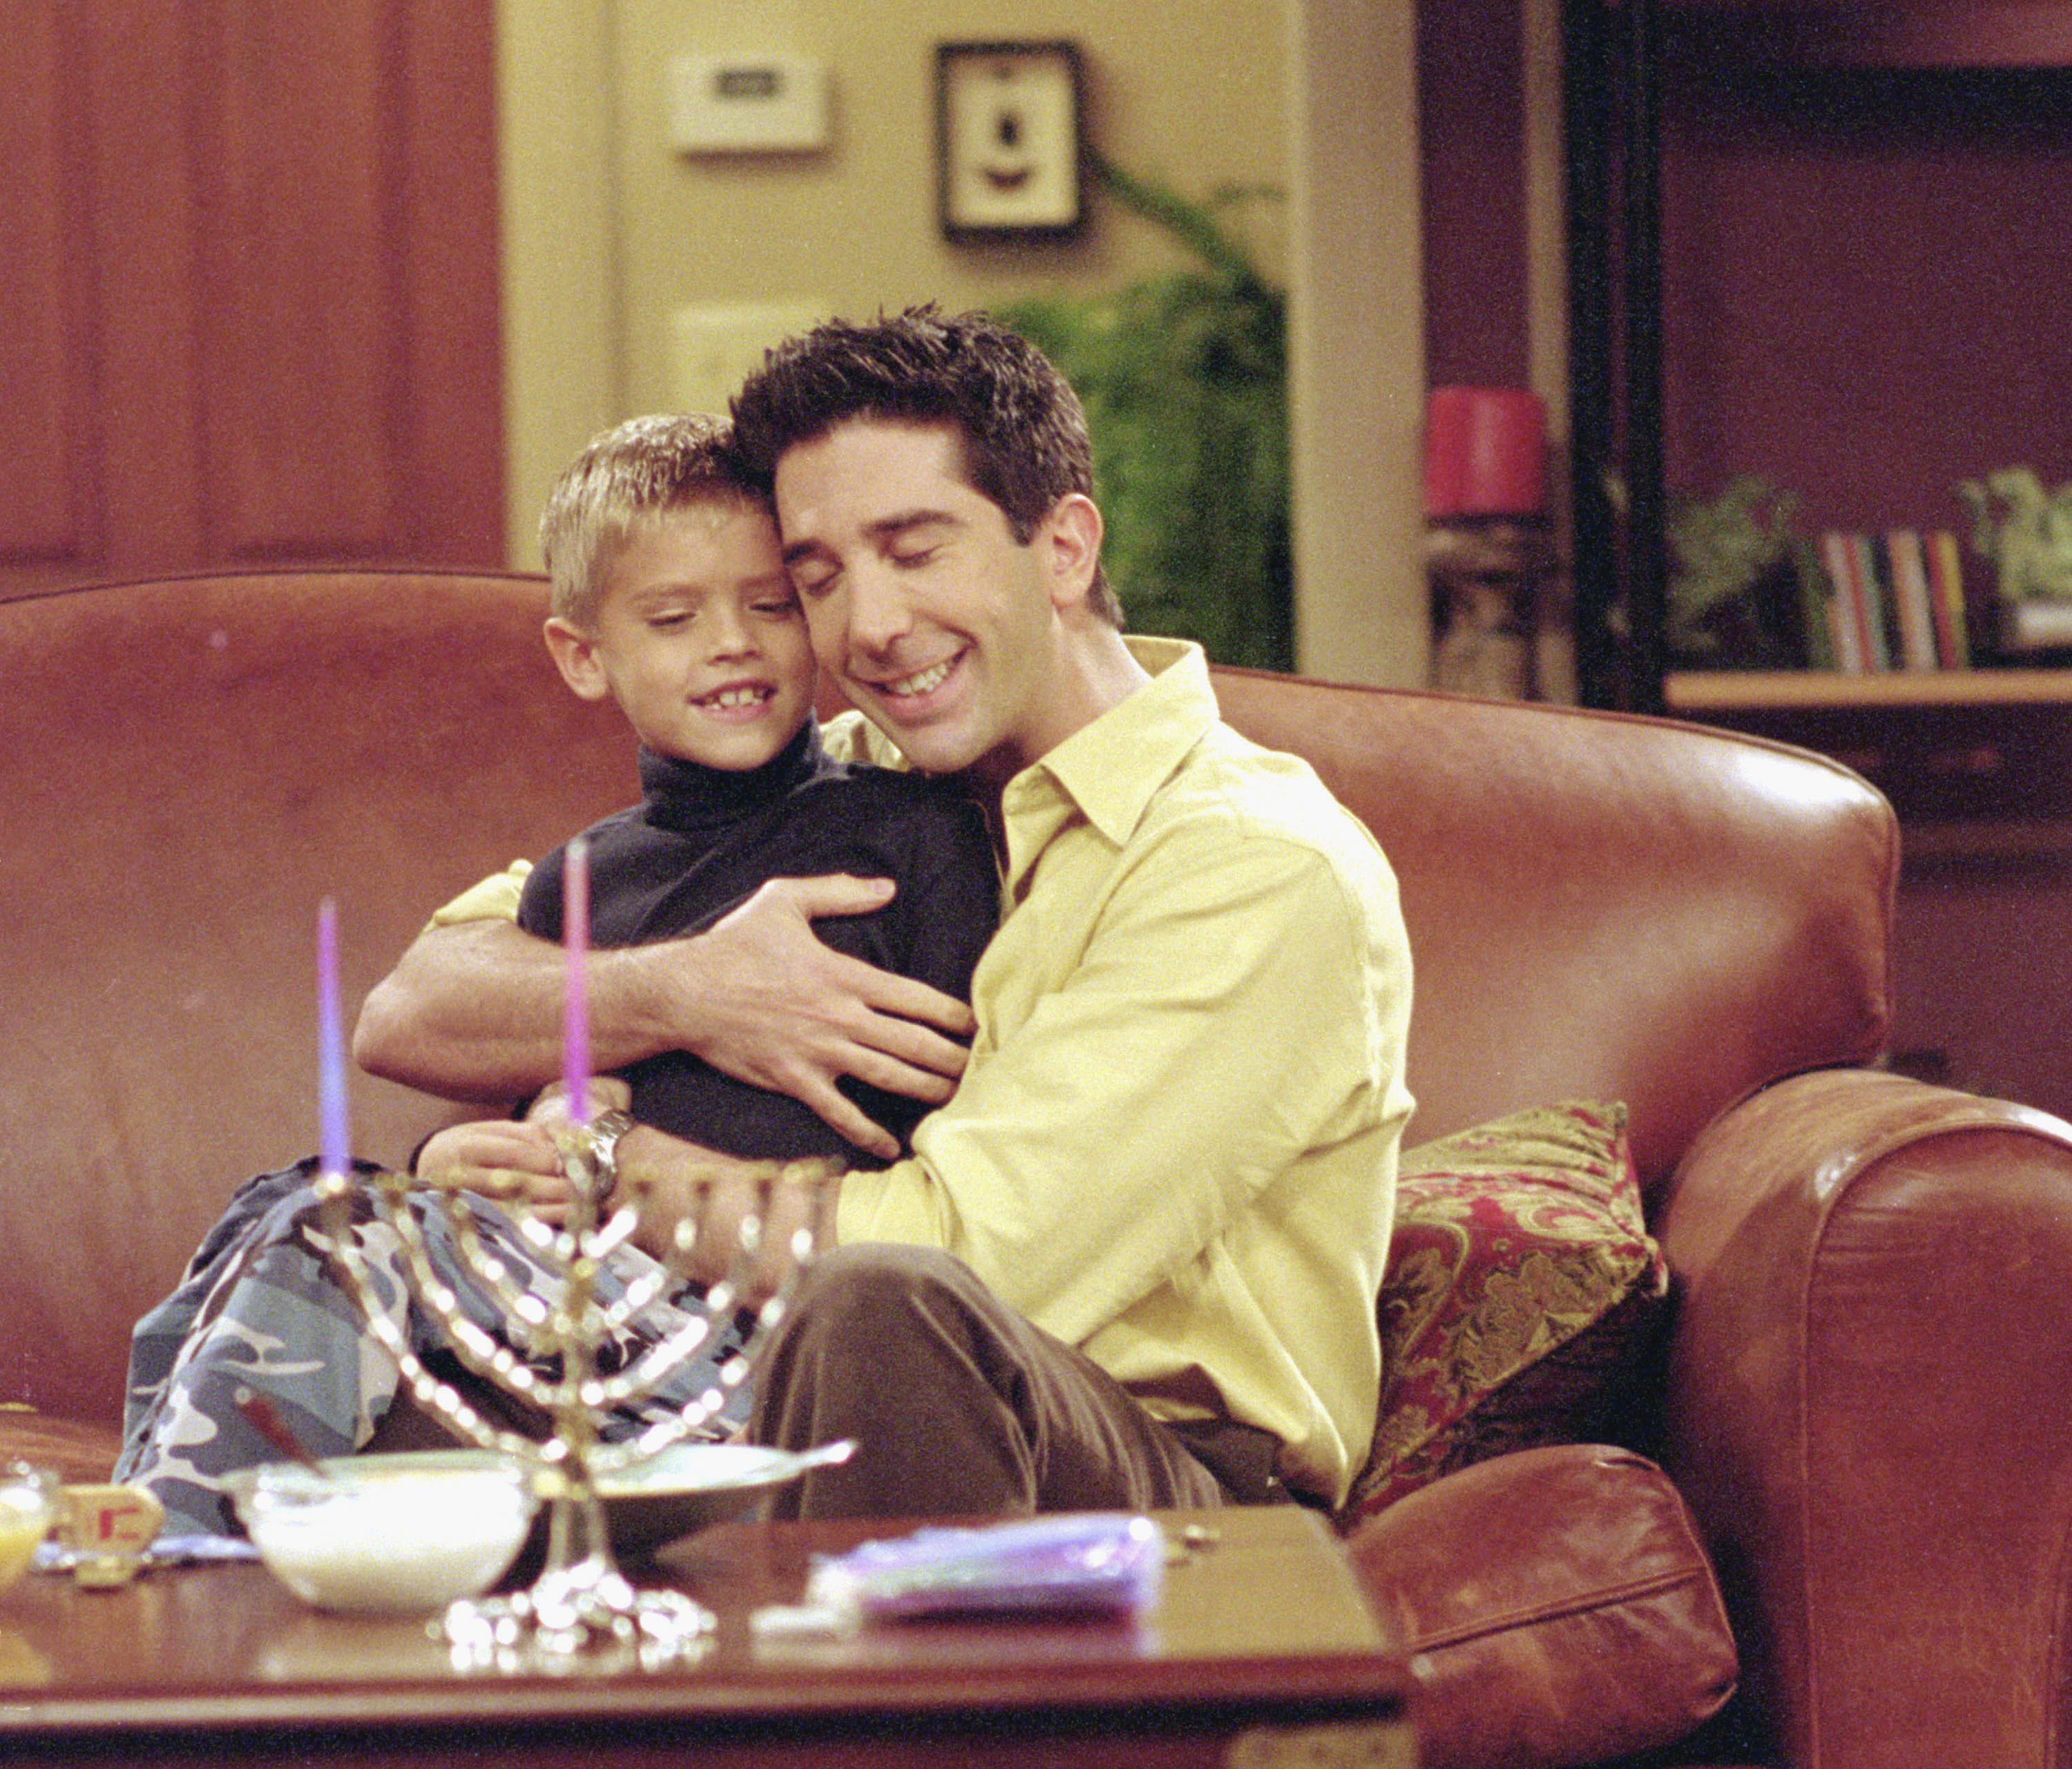 Ross Geller hugs Ben Geller in 'Friends'